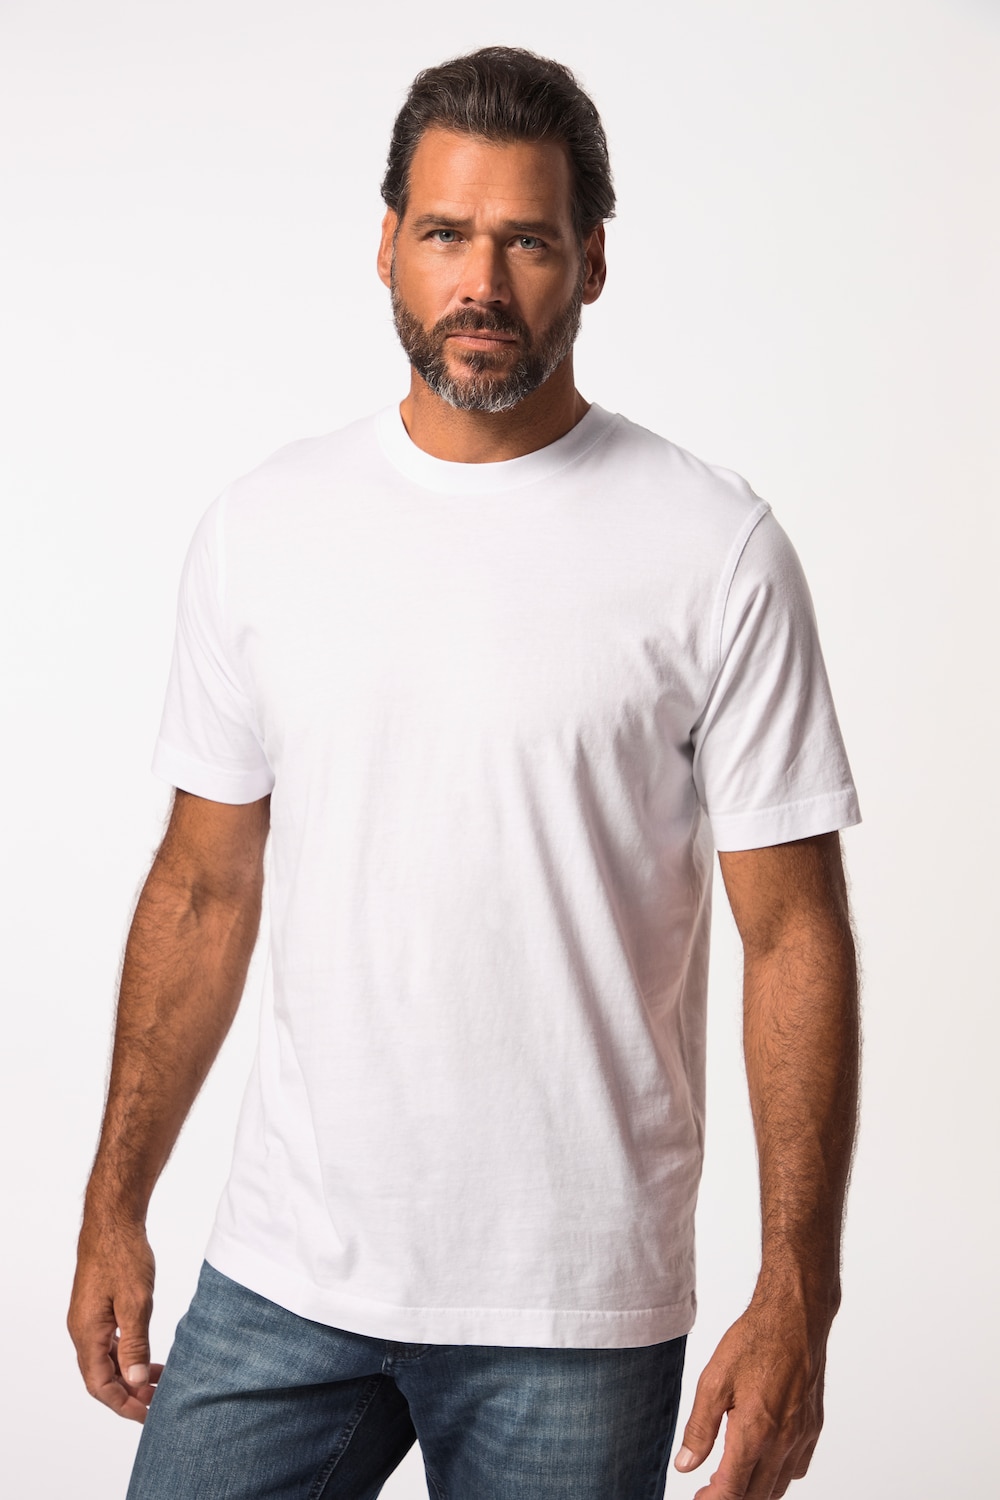 Grote Maten T-shirt, Heren, wit, Maat: L, Katoen, JP1880